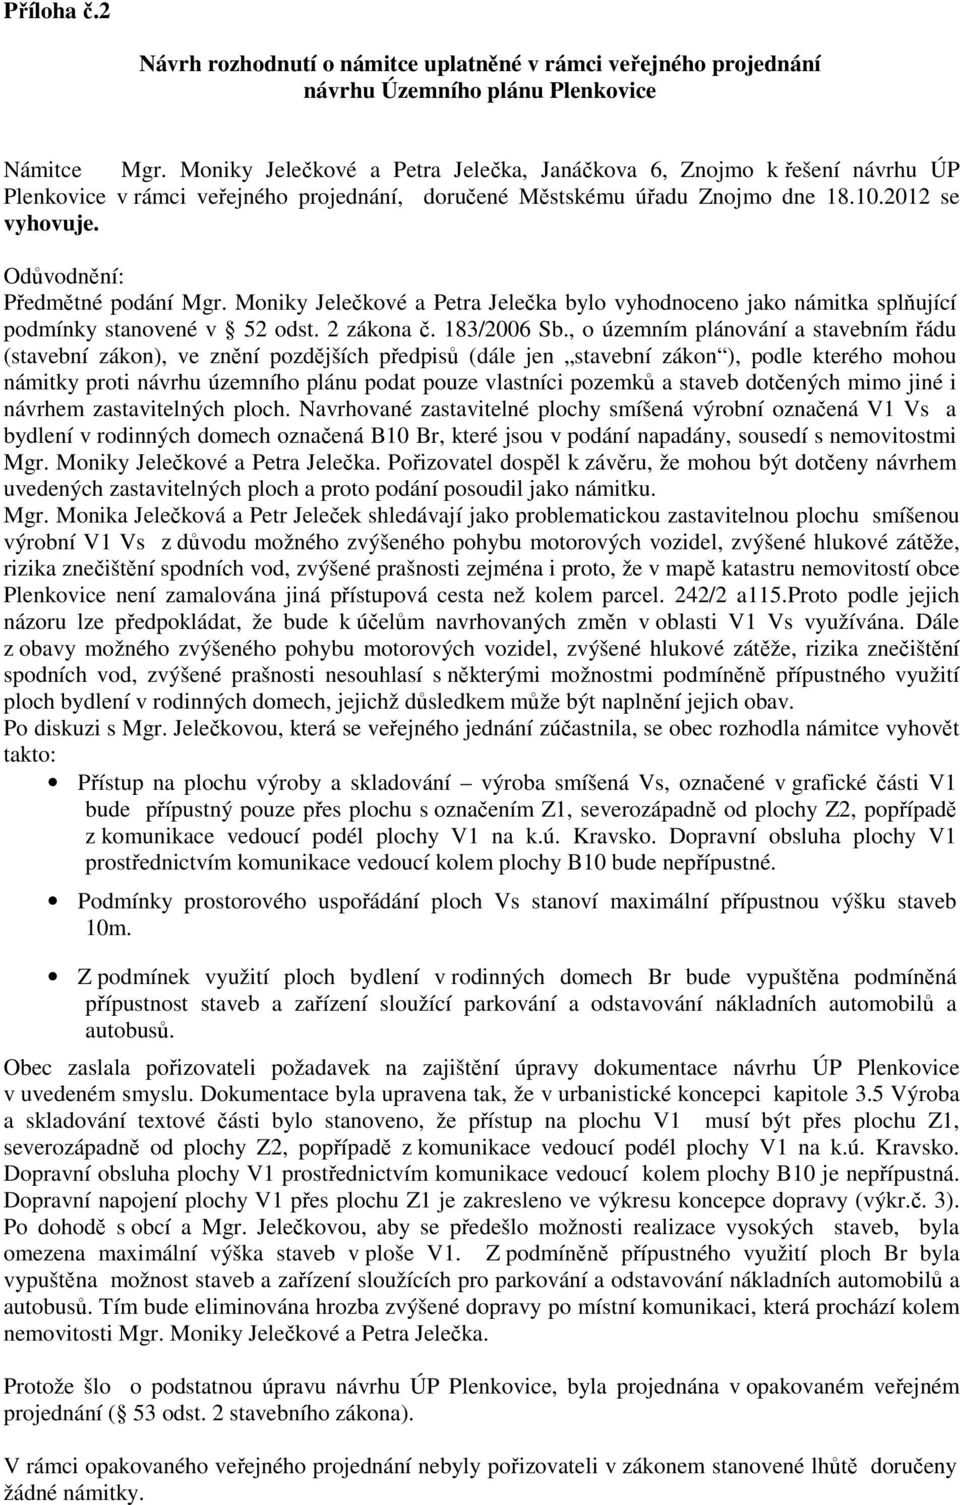 Odůvodnění: Předmětné podání Mgr. Moniky Jelečkové a Petra Jelečka bylo vyhodnoceno jako námitka splňující podmínky stanovené v 52 odst. 2 zákona č. 183/2006 Sb.